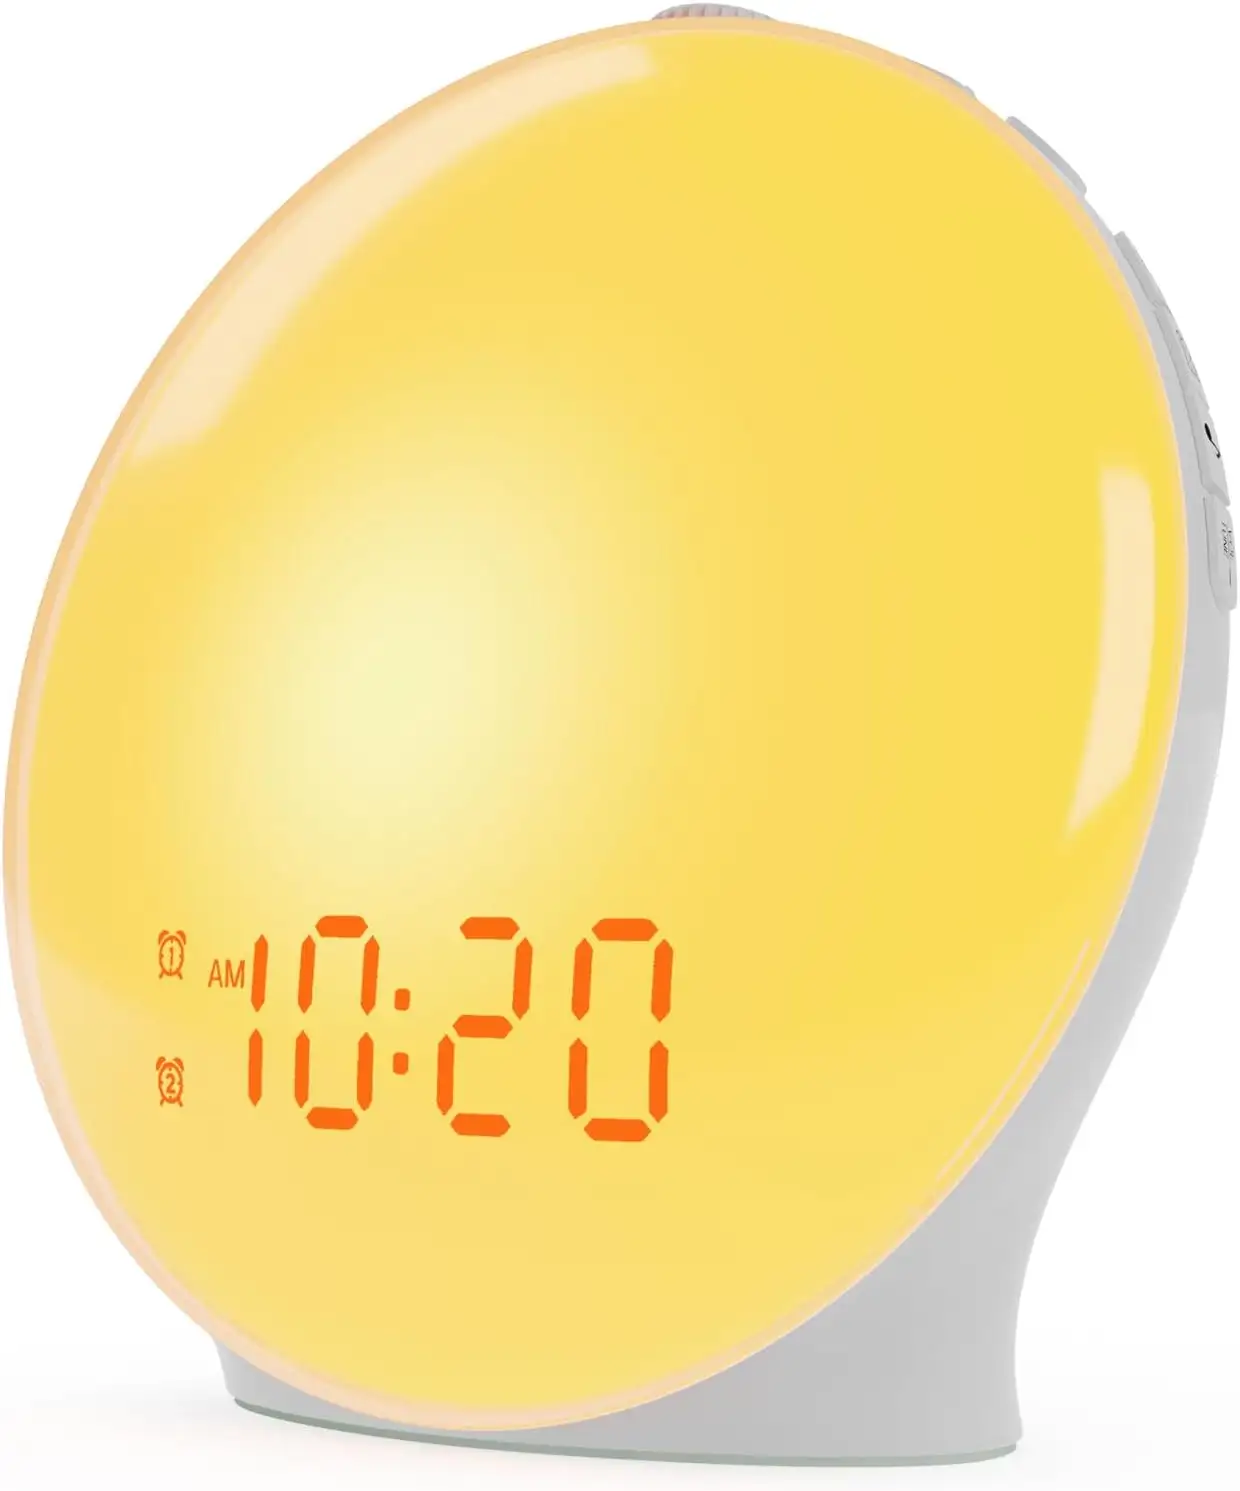 Hoparlör ışığı Led çalar saat BedsideTable lamba gece RGB Sunset USB uyku dijital zamanlayıcı uyandırma işığı Sunrise çalar saat